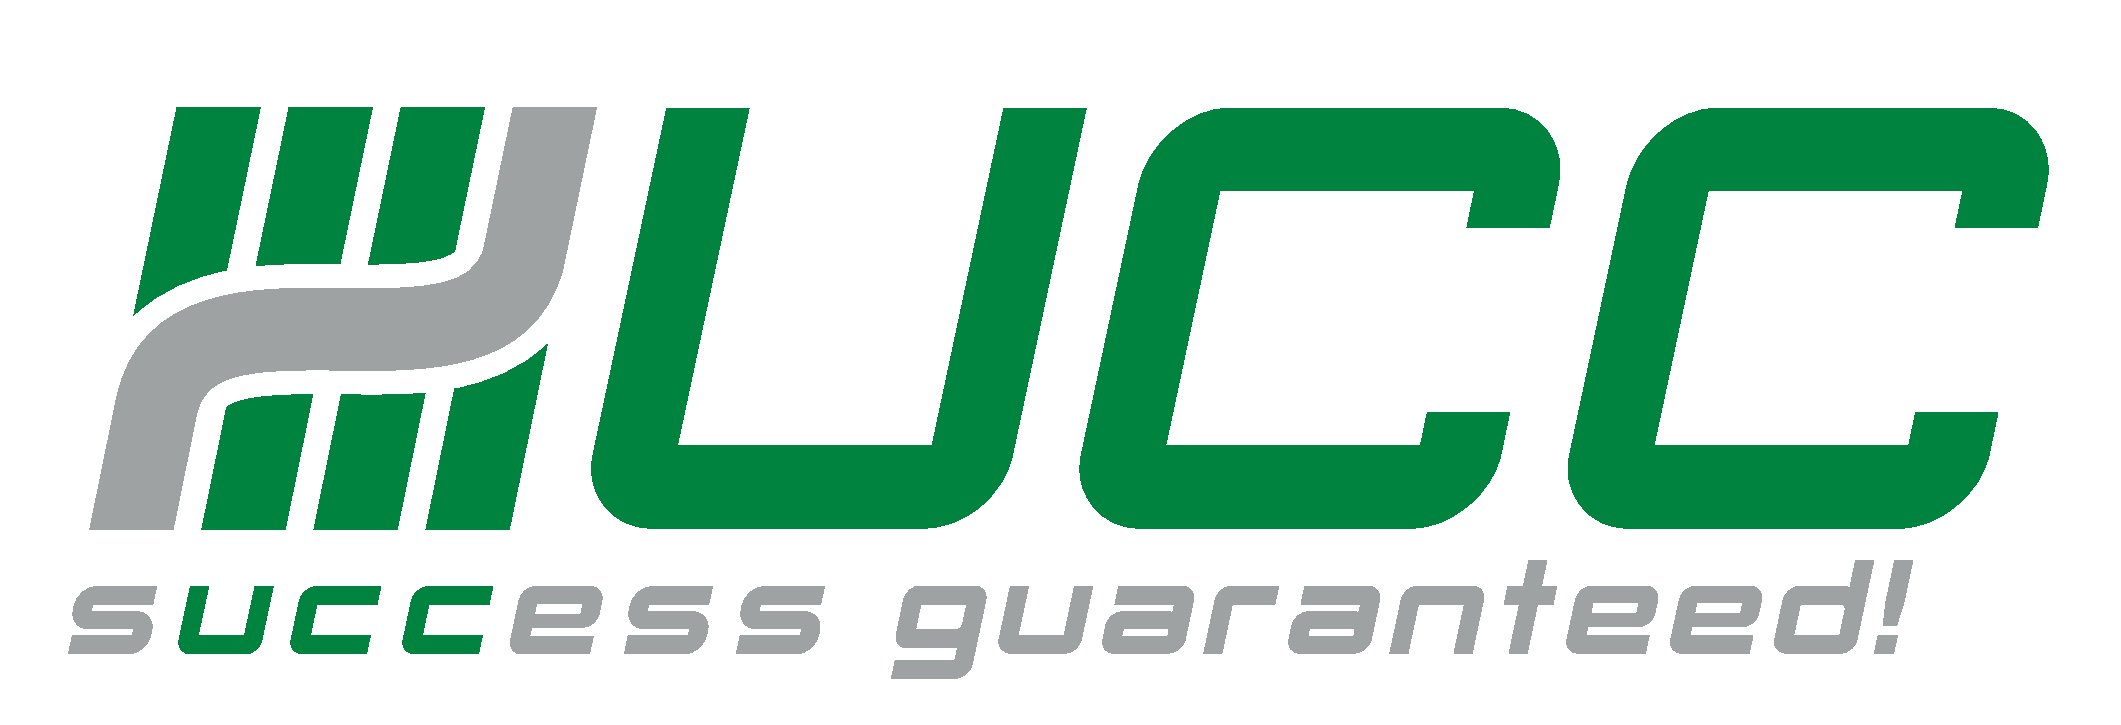 UCC Company